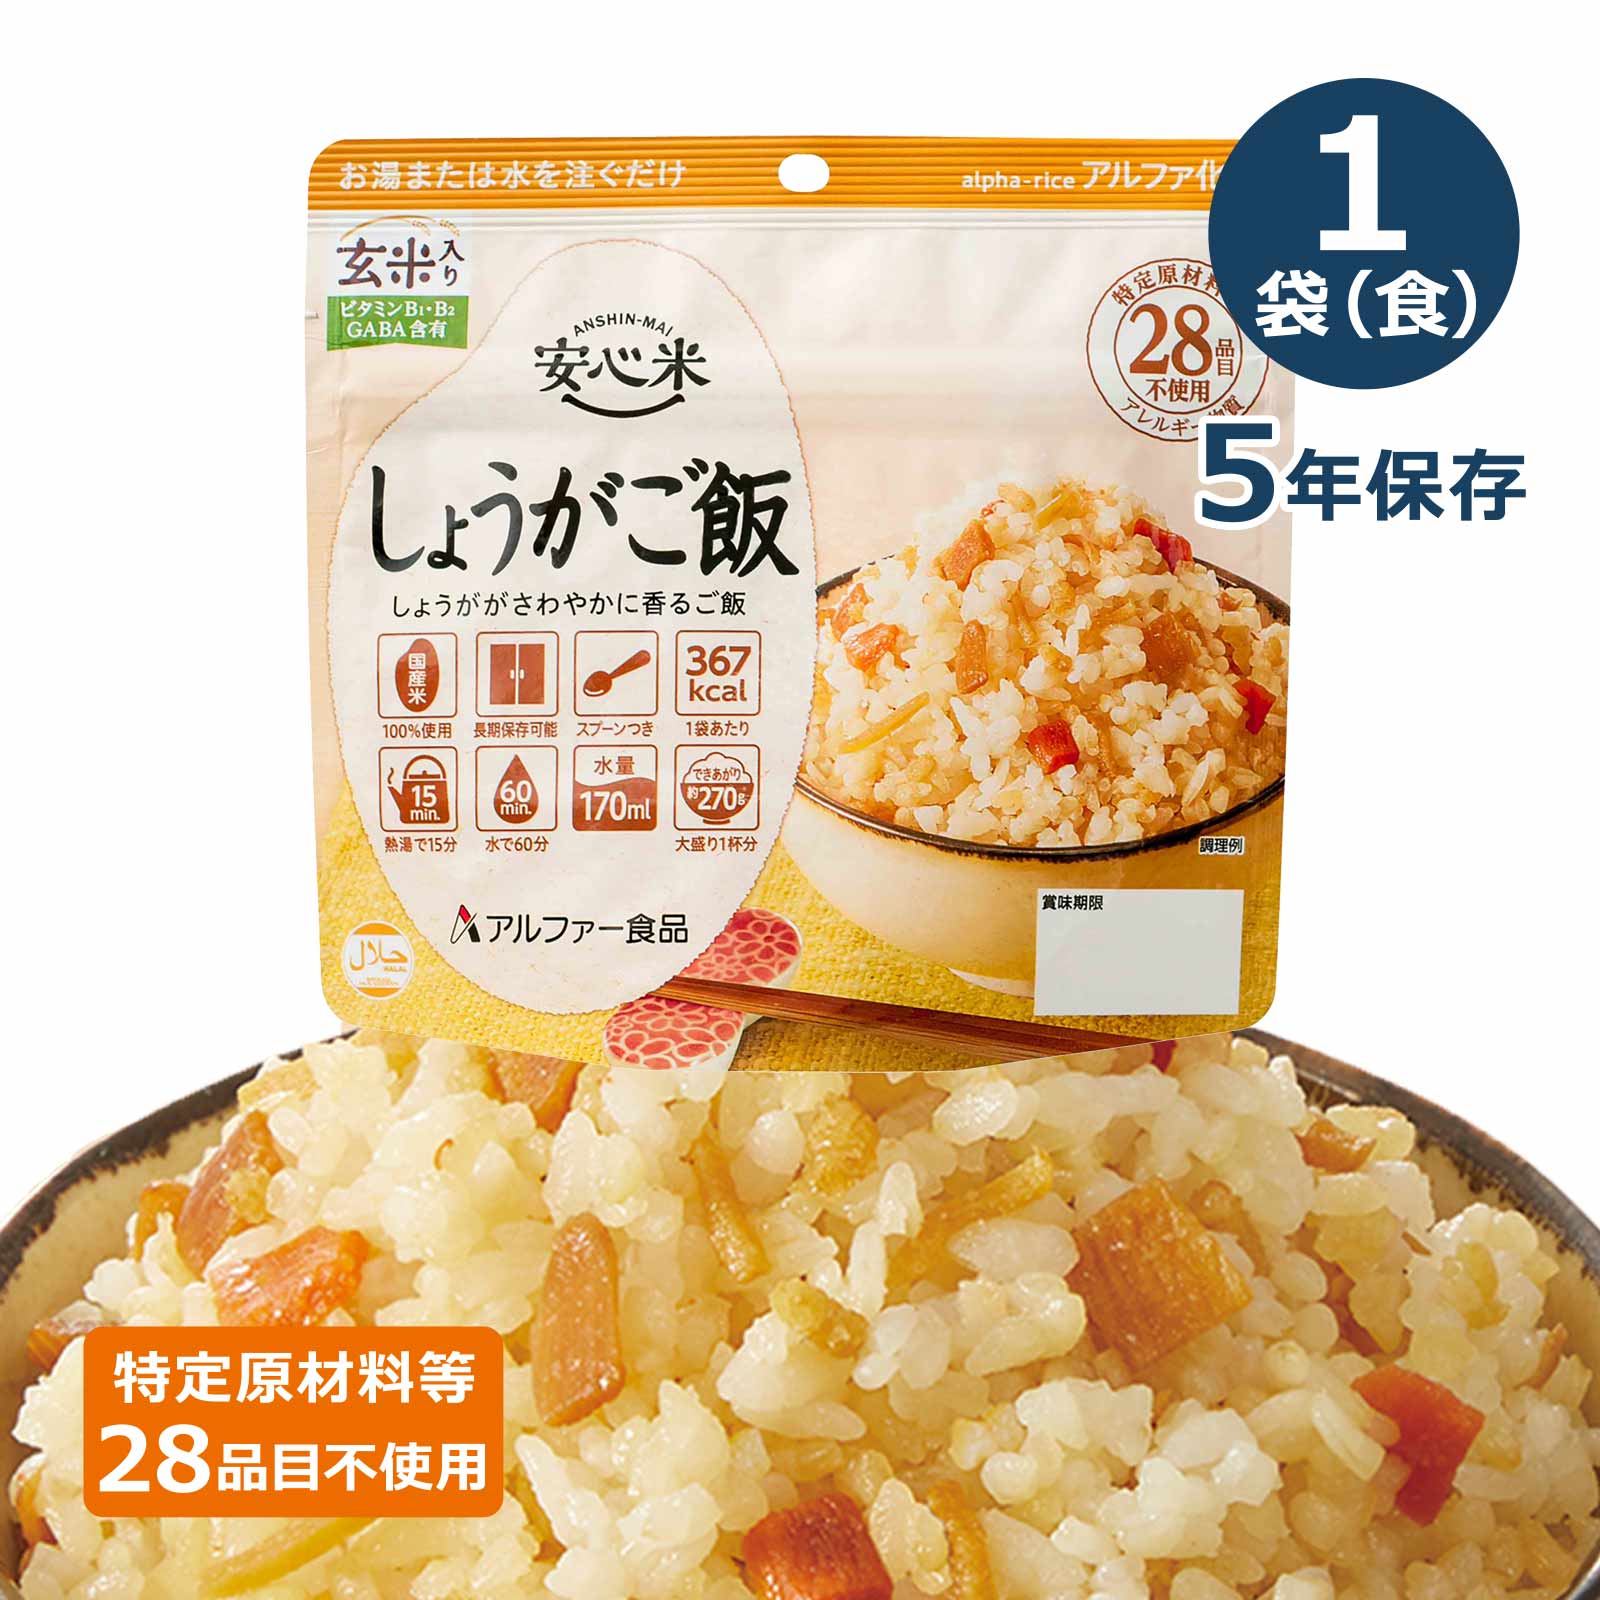 安心米アルファ化米個食しょうがご飯(玄米入り)5年100gのイメージカット